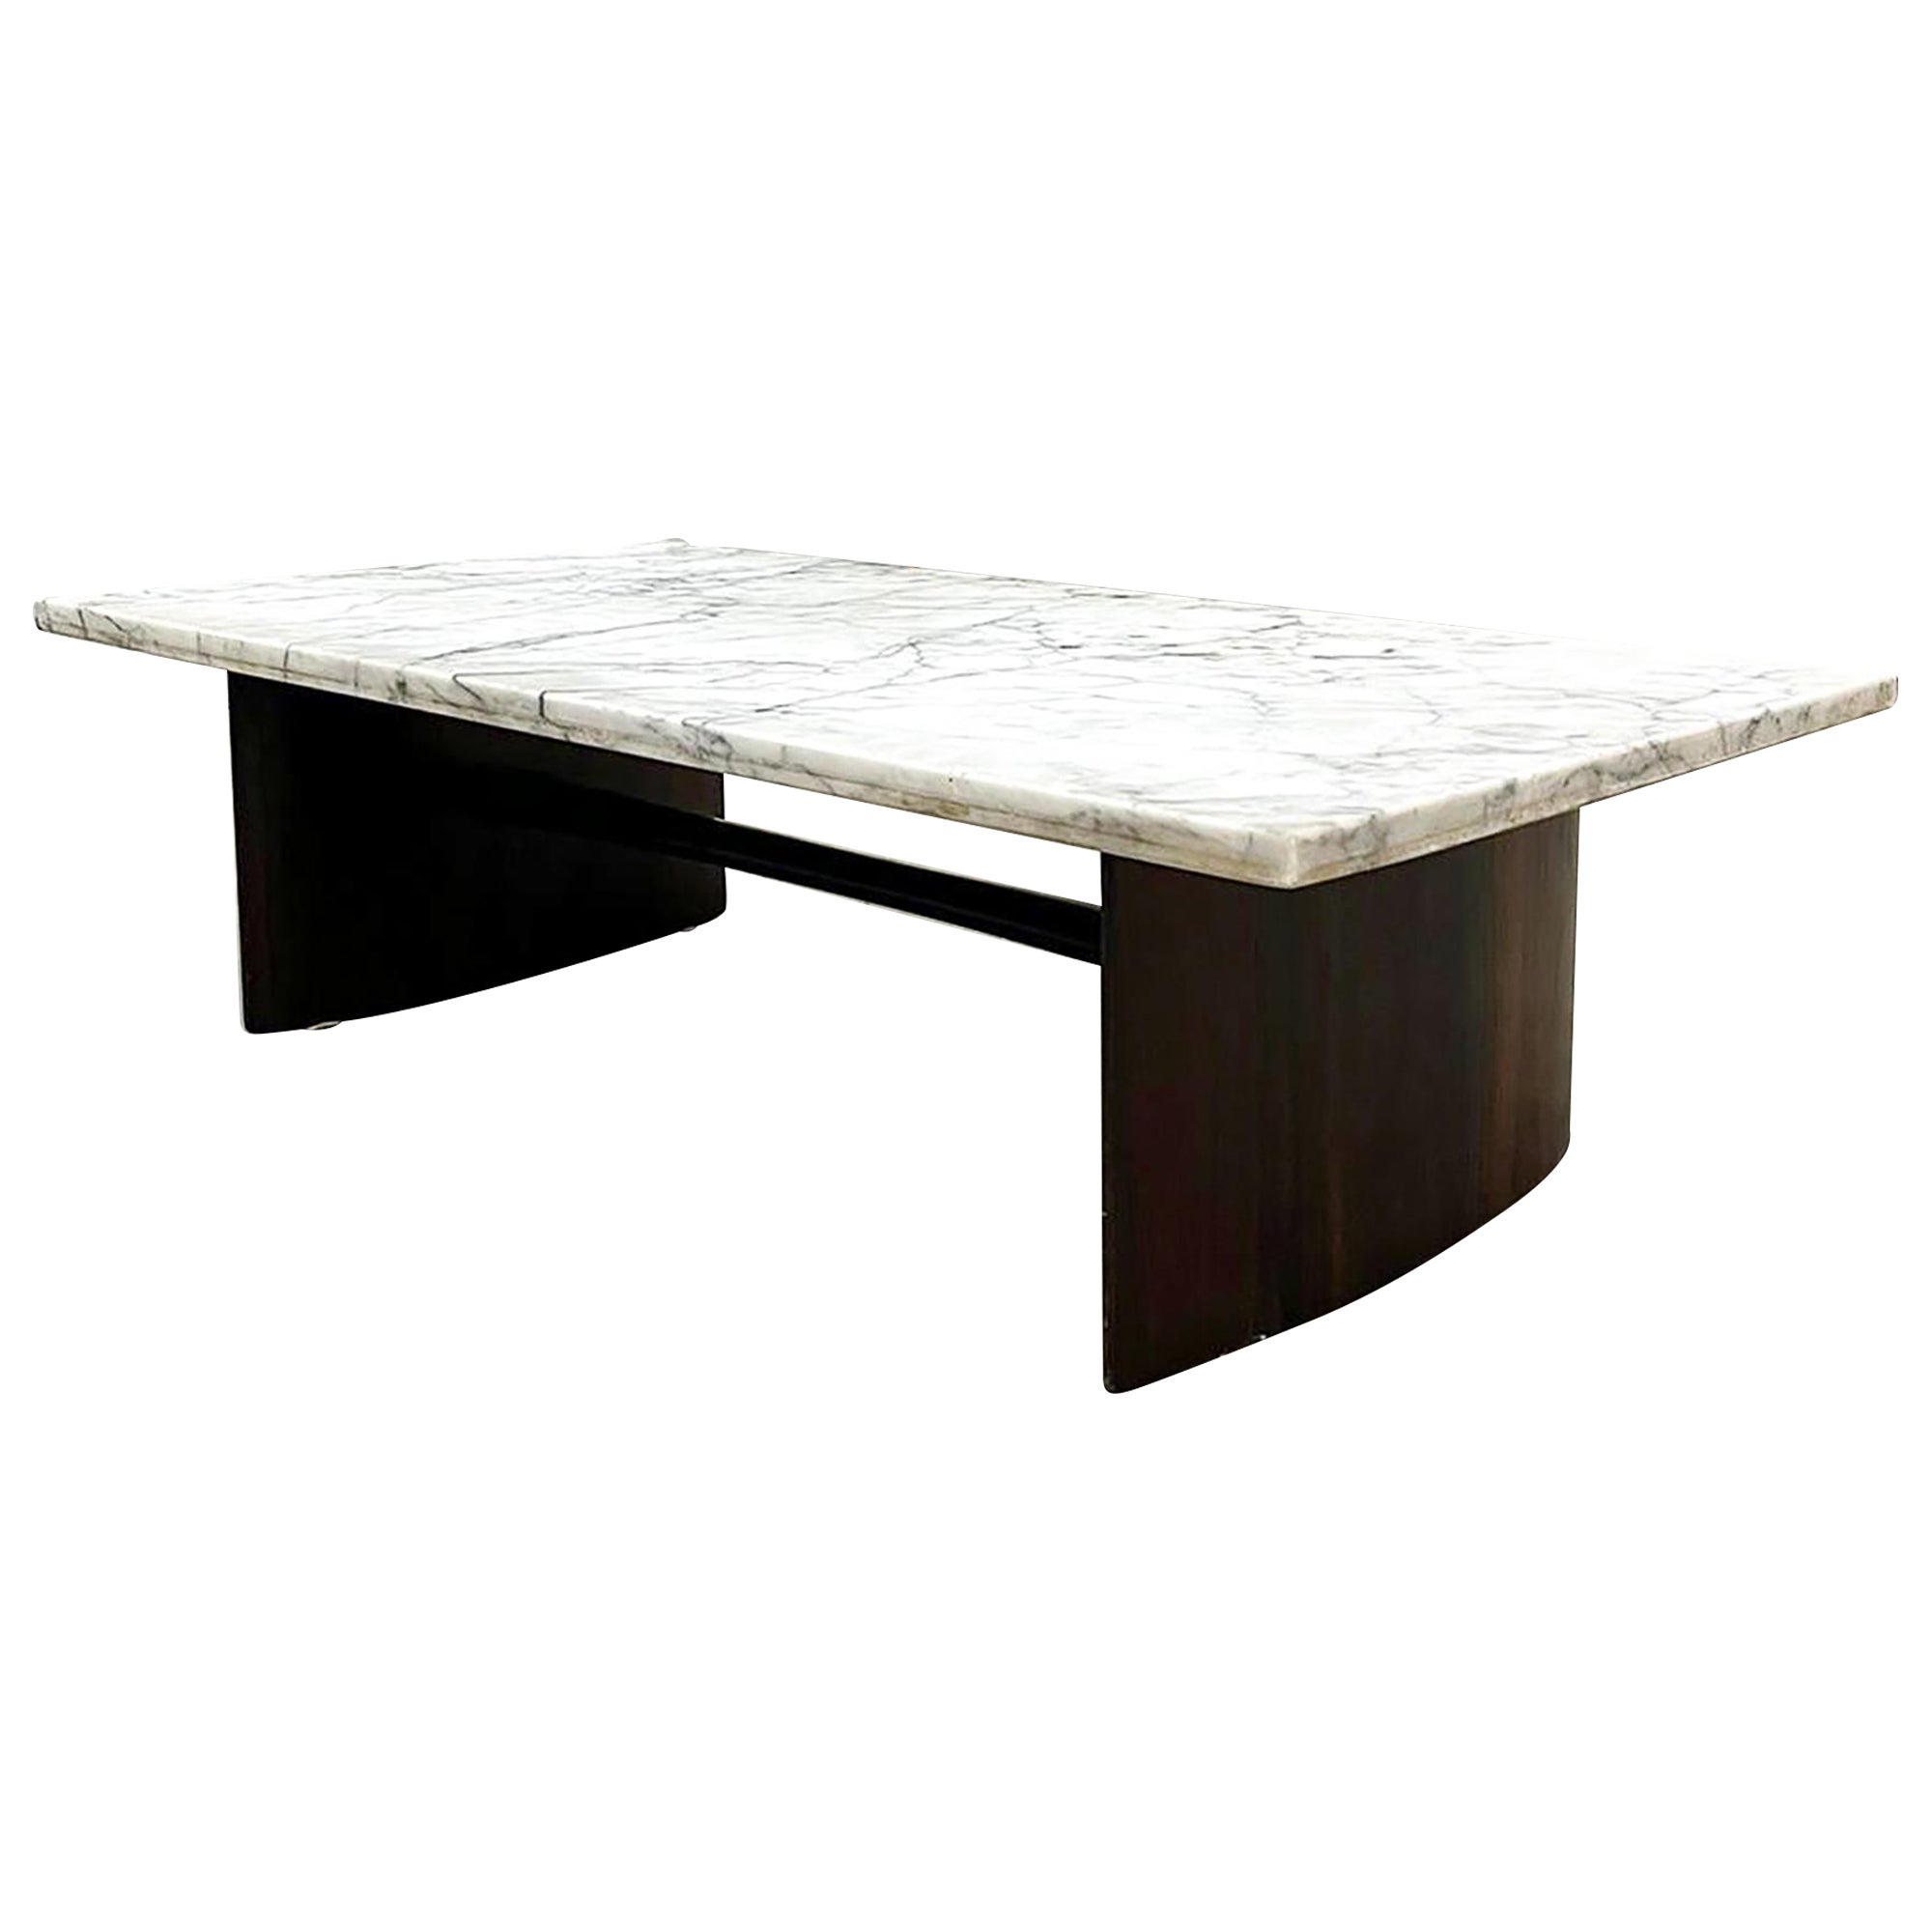 Table basse moderne brésilienne en bois dur et marbre, Joaquim Tenreiro, années 1950